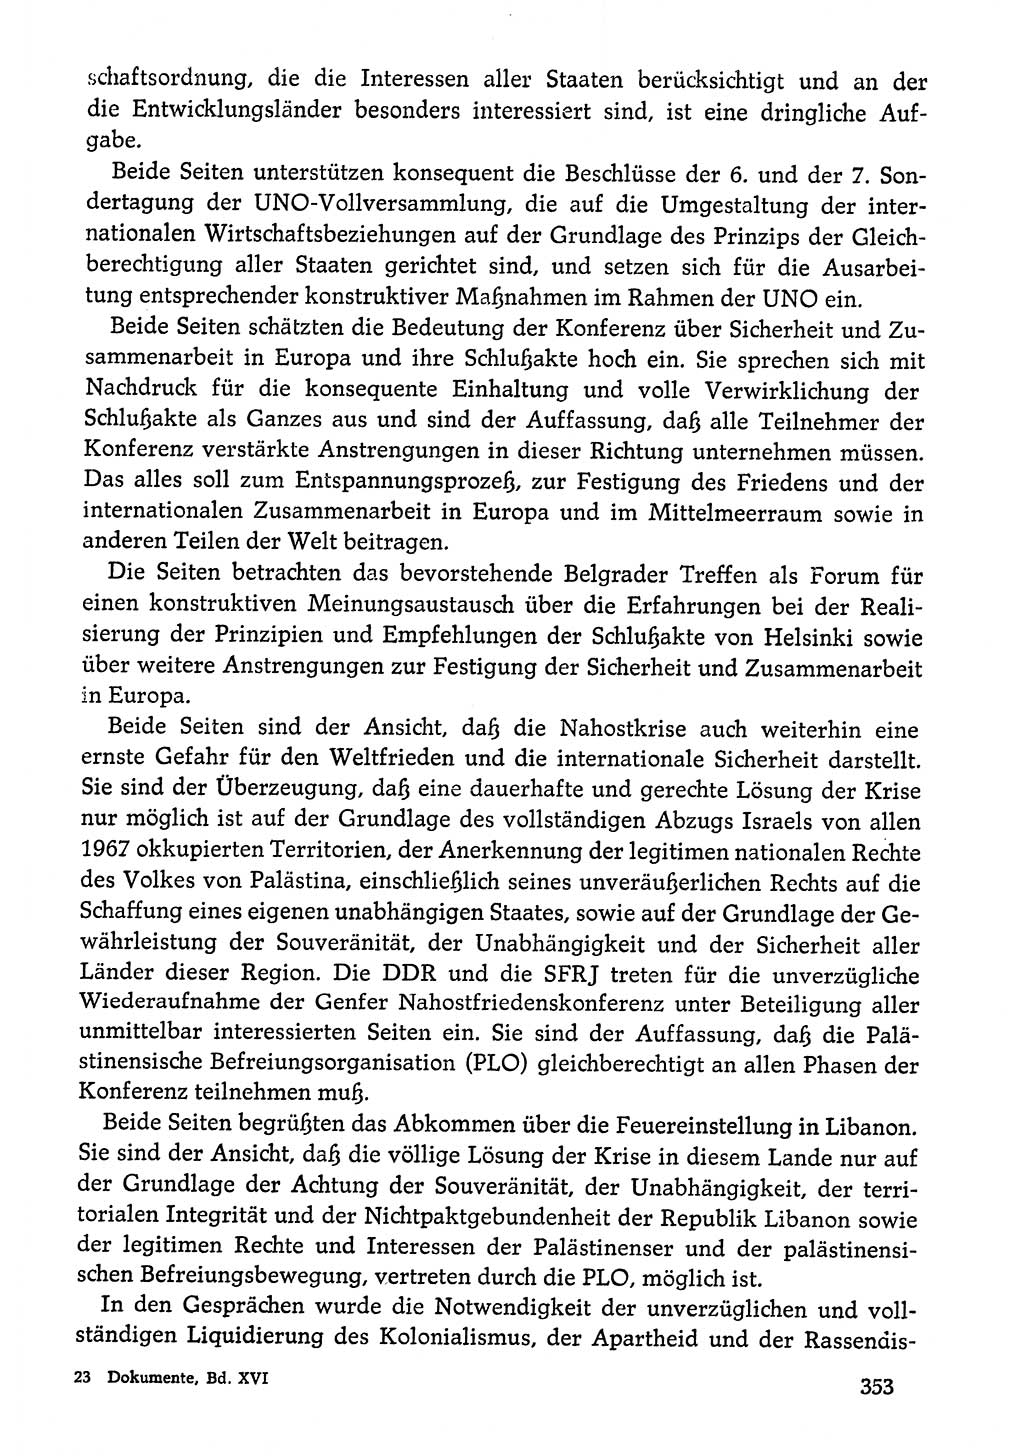 Dokumente der Sozialistischen Einheitspartei Deutschlands (SED) [Deutsche Demokratische Republik (DDR)] 1976-1977, Seite 353 (Dok. SED DDR 1976-1977, S. 353)